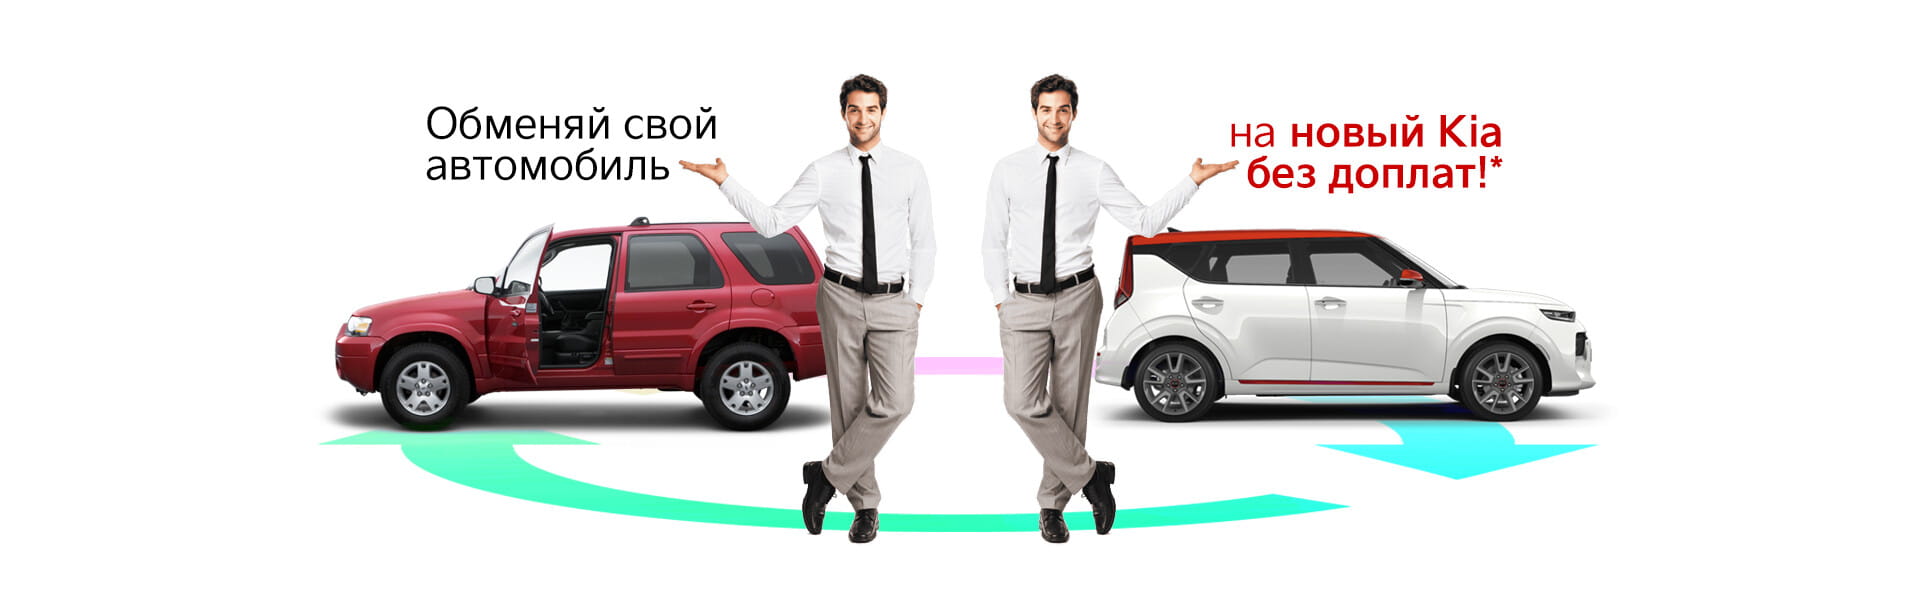 Купить новый Kia K3 в Москве: комплектации и цены Киа К3 в автосалонах РОЛЬФ